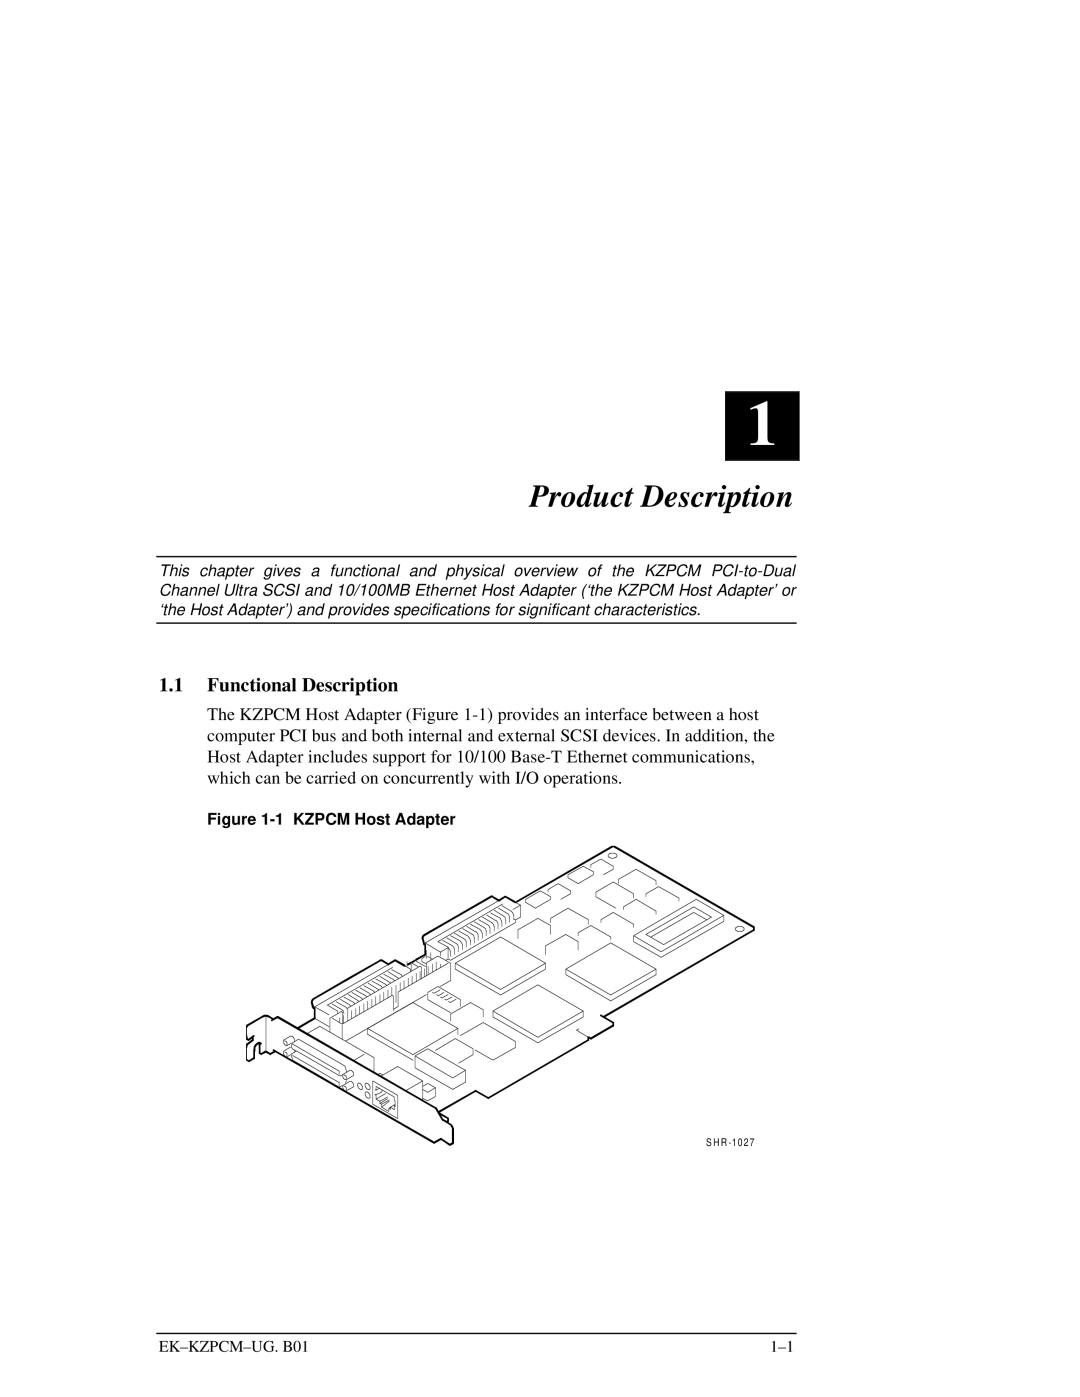 Intel EK-KZPCM-UG manual Product Description, Functional Description 